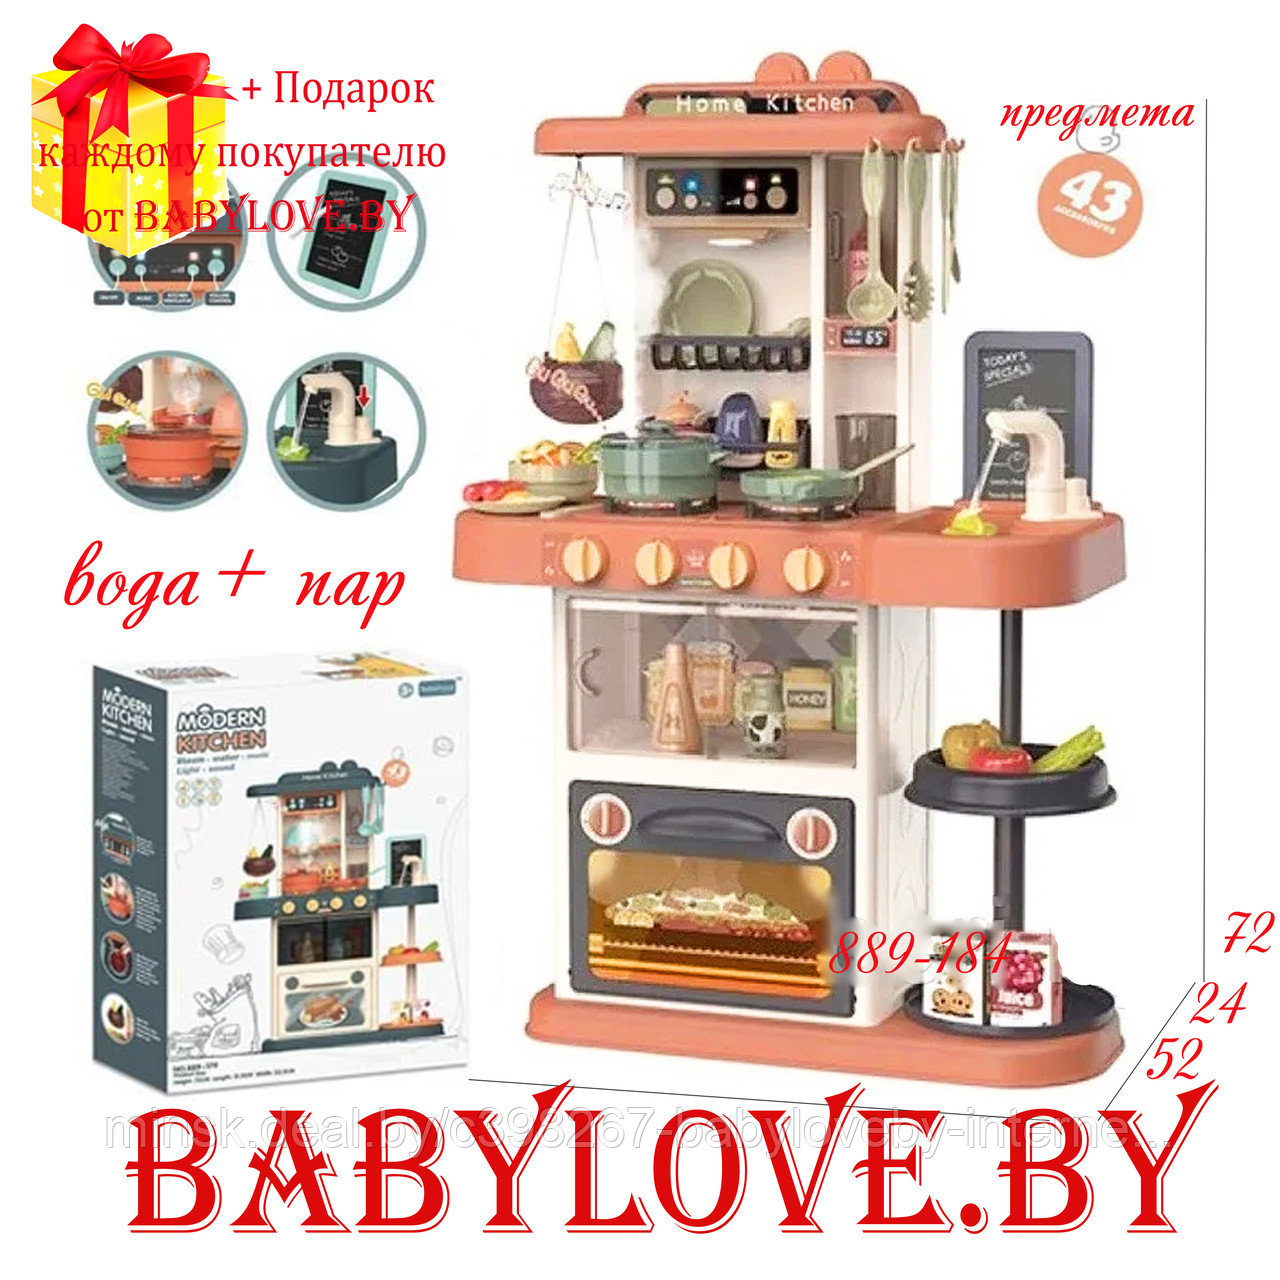 Детская кухня Limo Toy  889-184 звук+ свет + вода+ пар,43 предмета, высота 72 см, розовая, фото 1